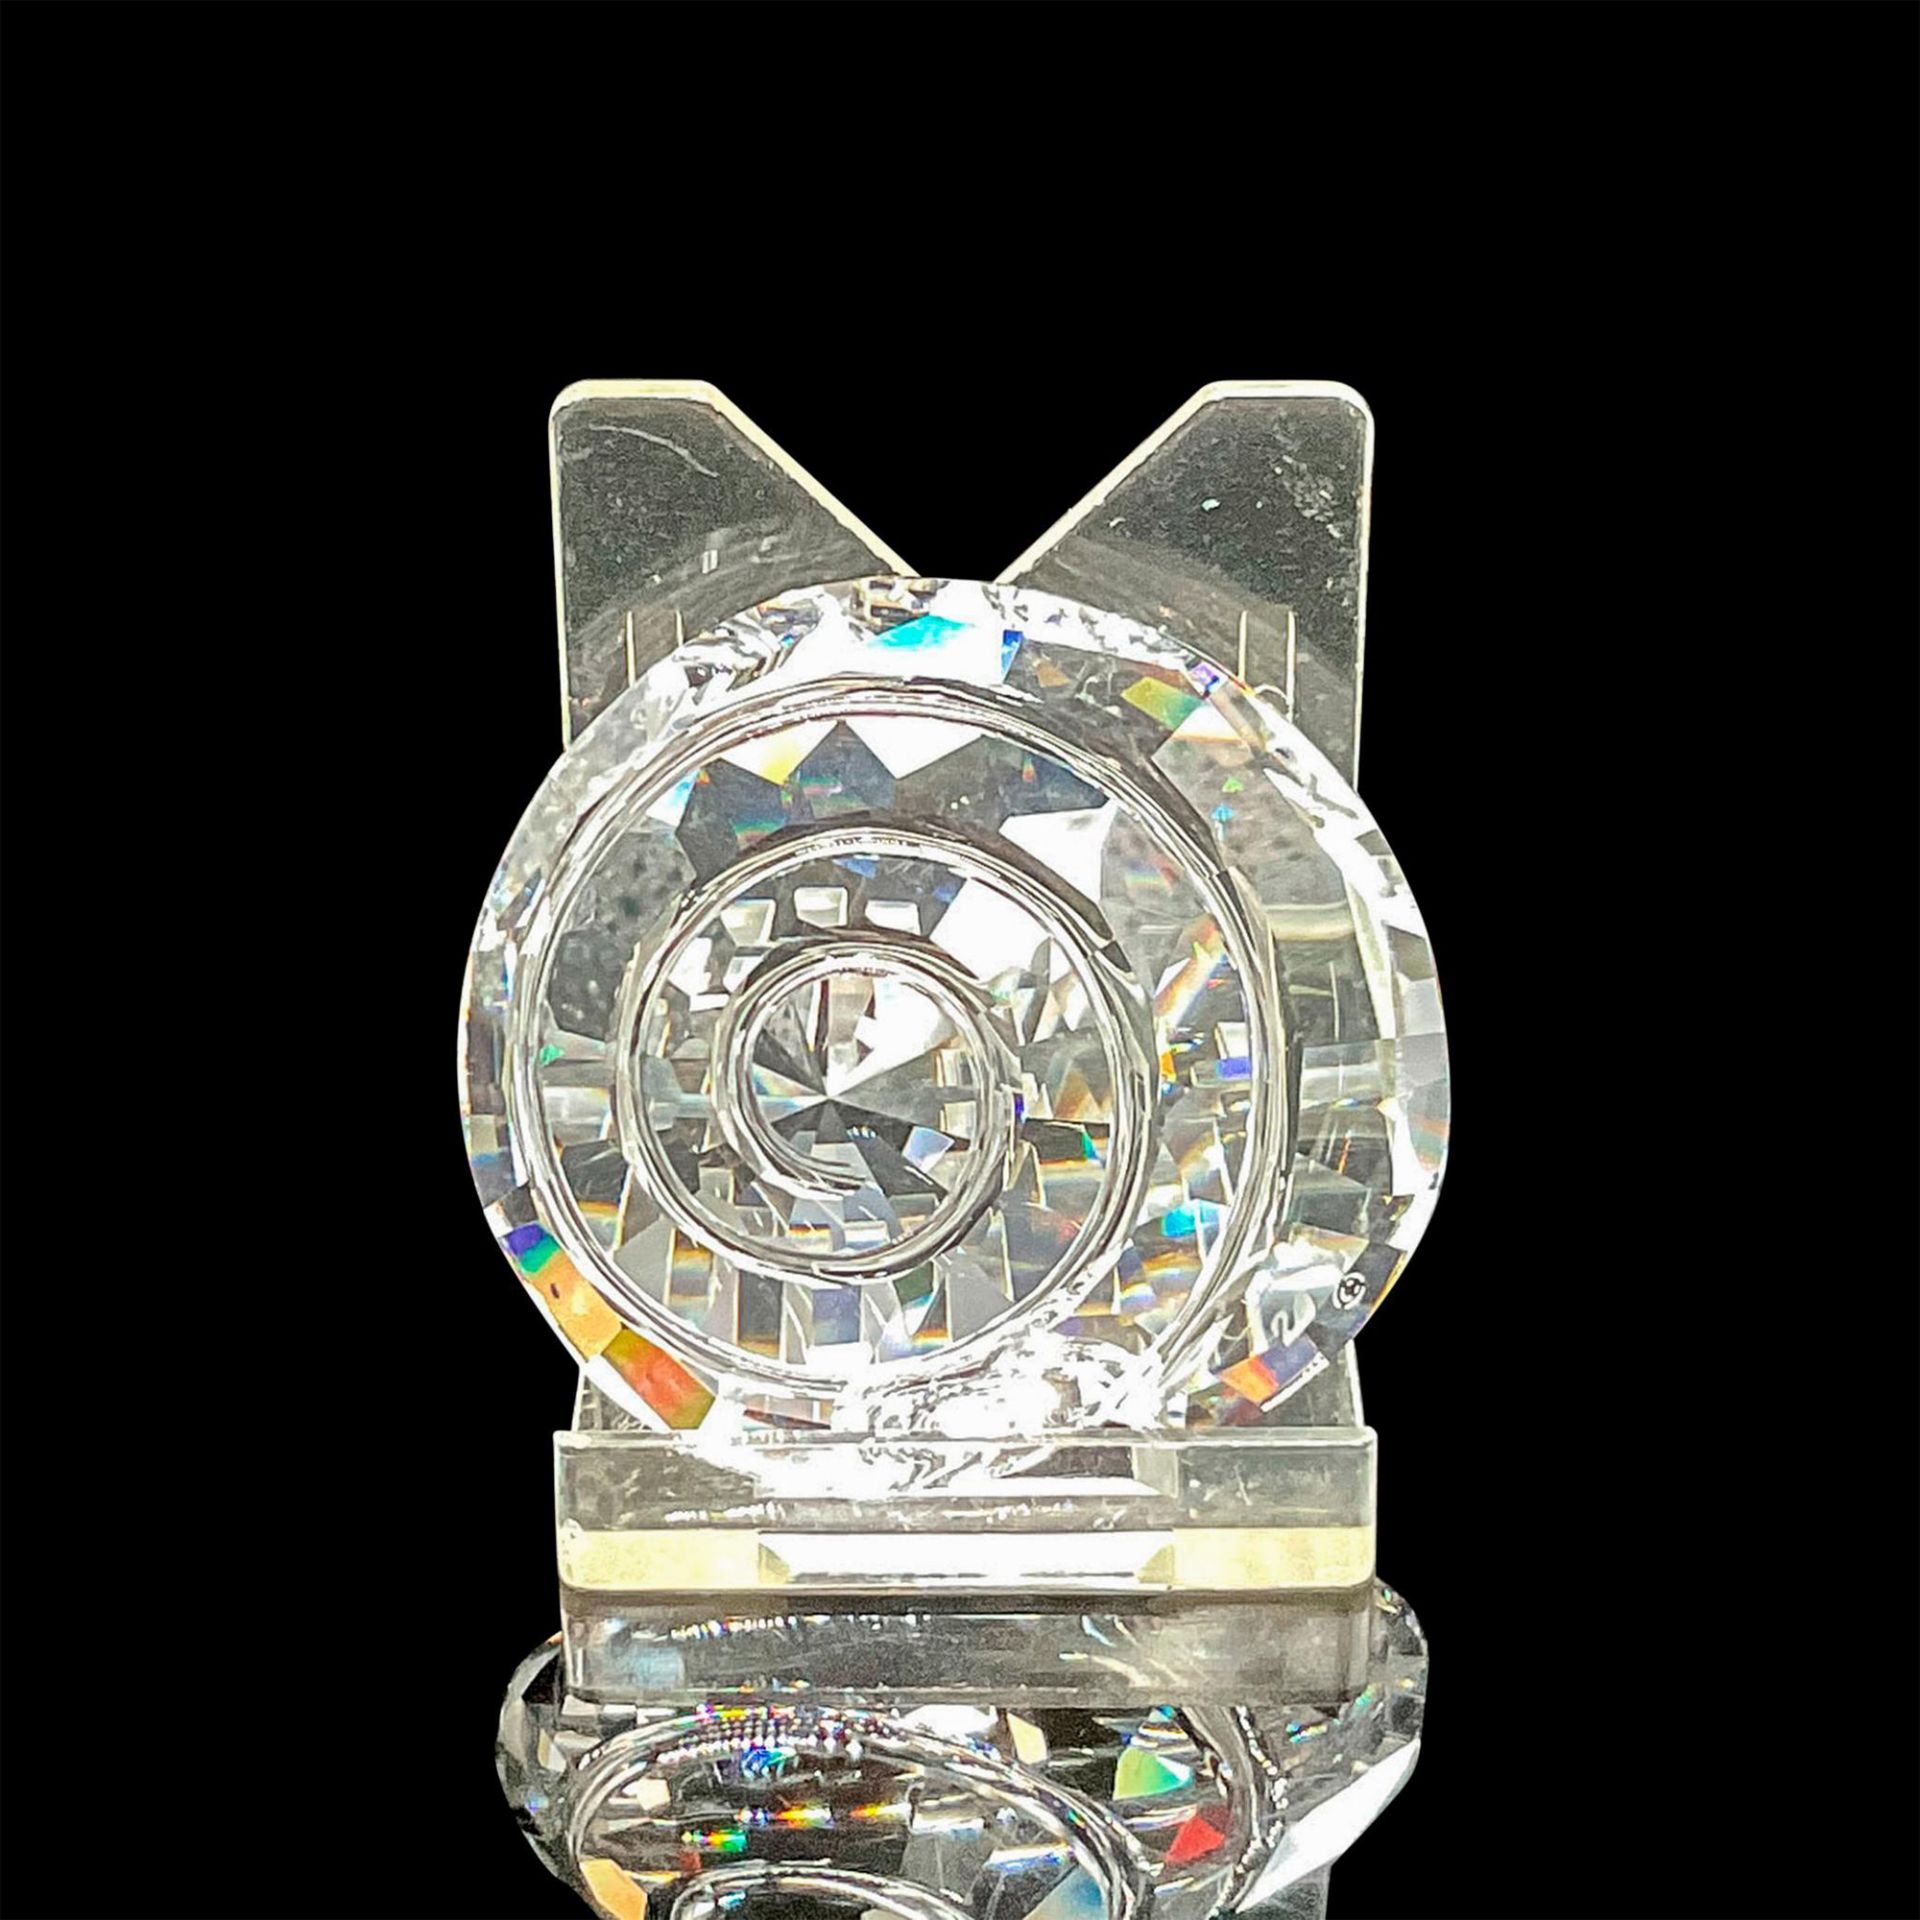 Swarovski Crystal Figurine, Seashell - Image 2 of 4